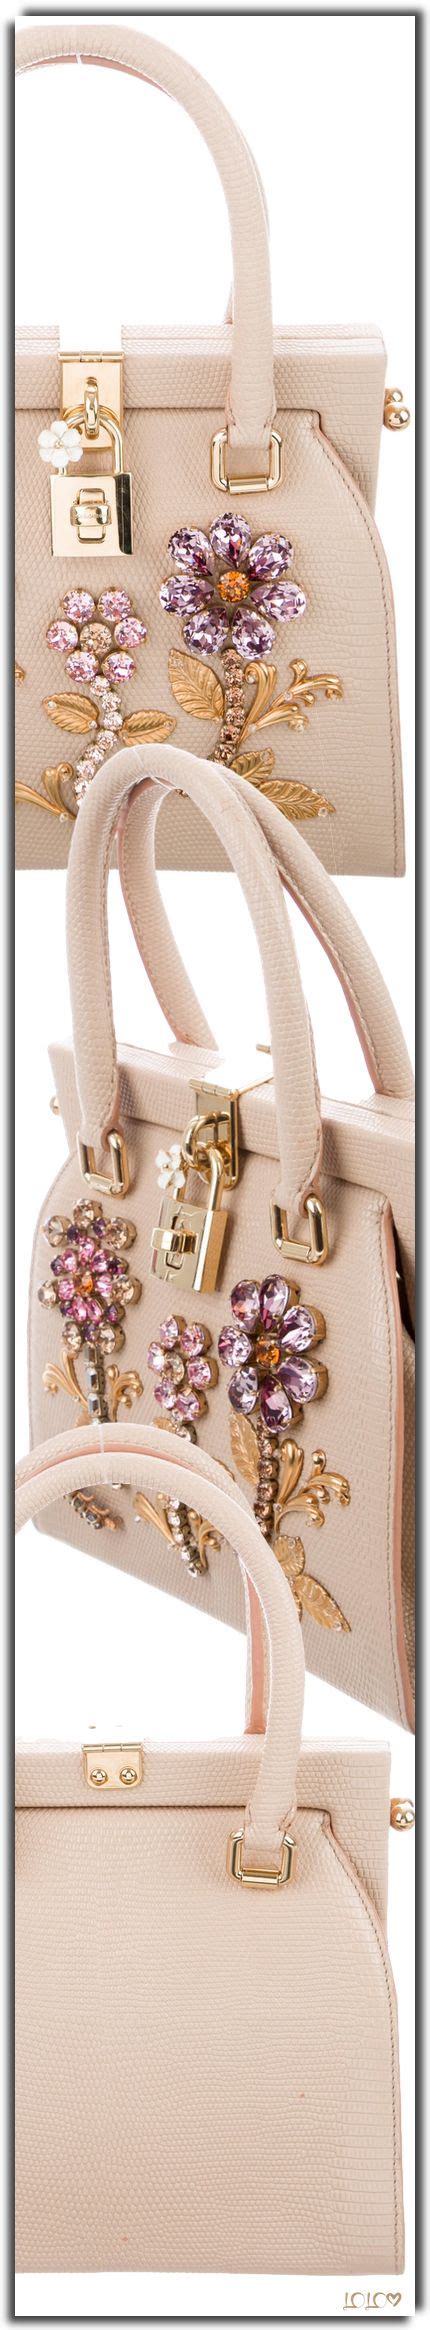 Dolce And Gabbana Handbag Dolceandgabbana Handbags Dolce And Gabbana